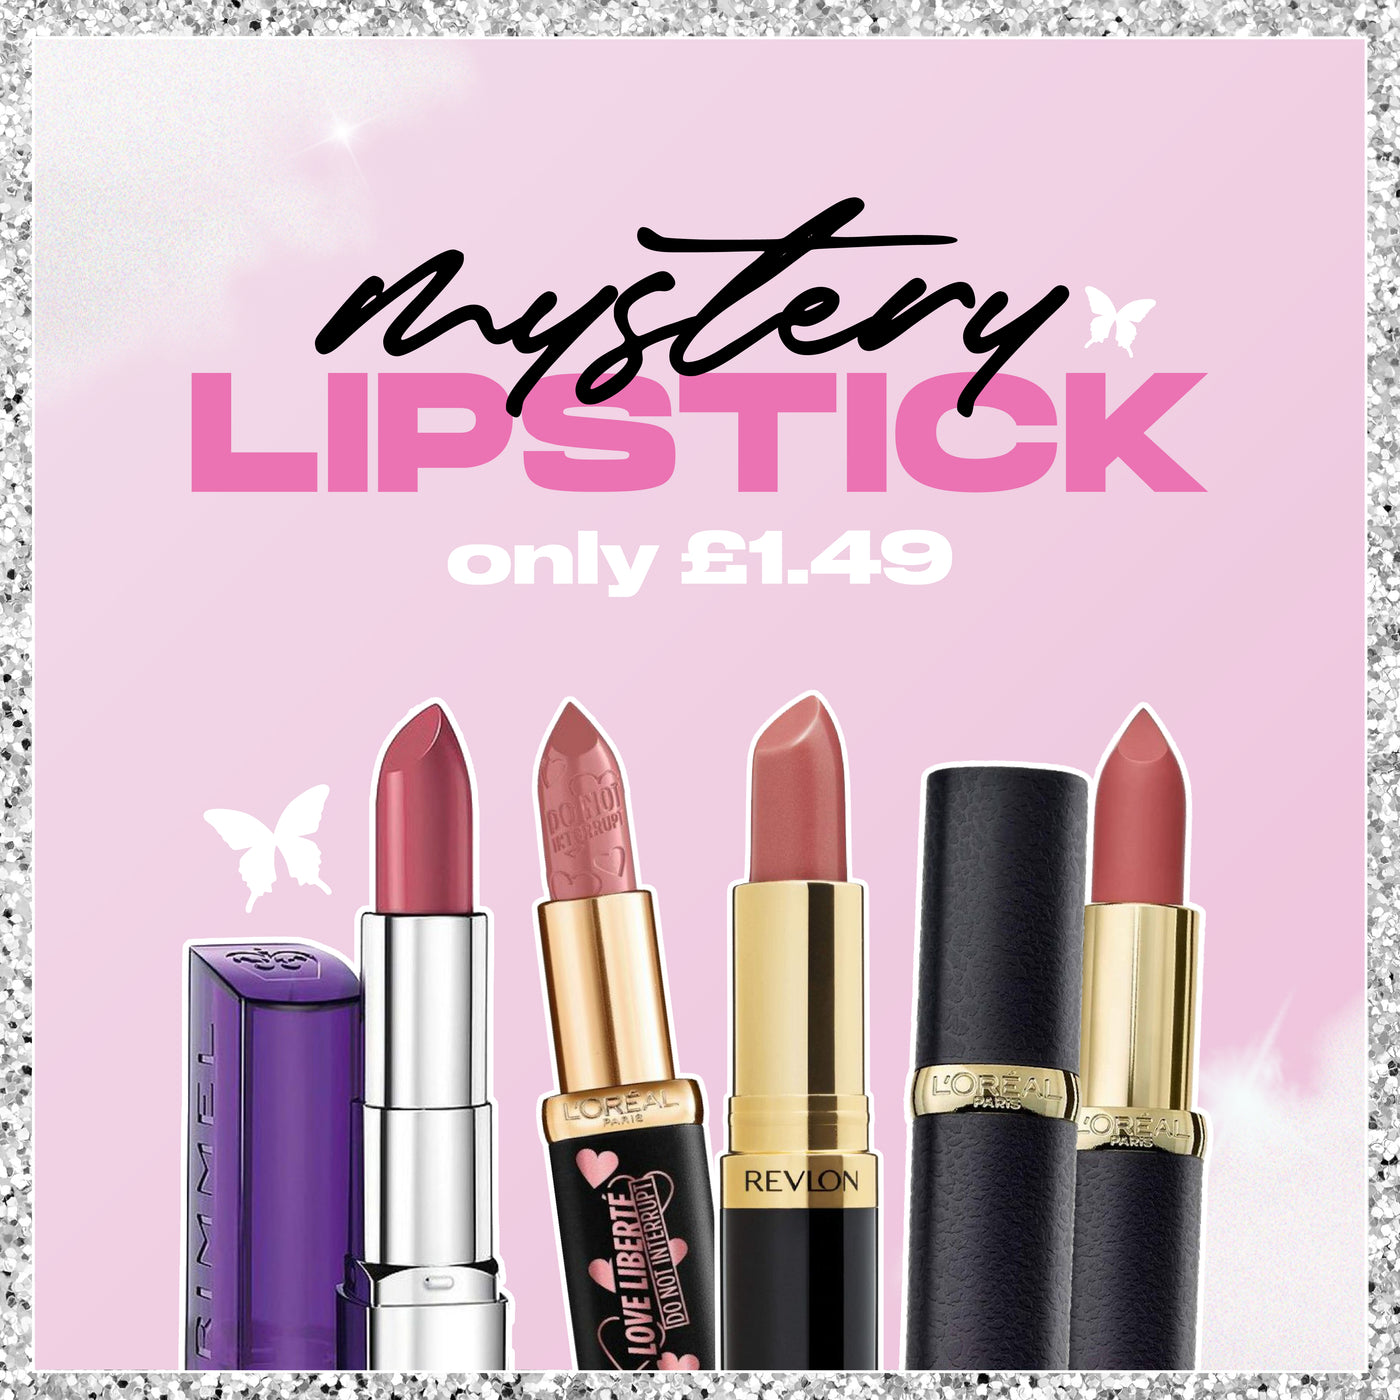 Mystery branded lipstick